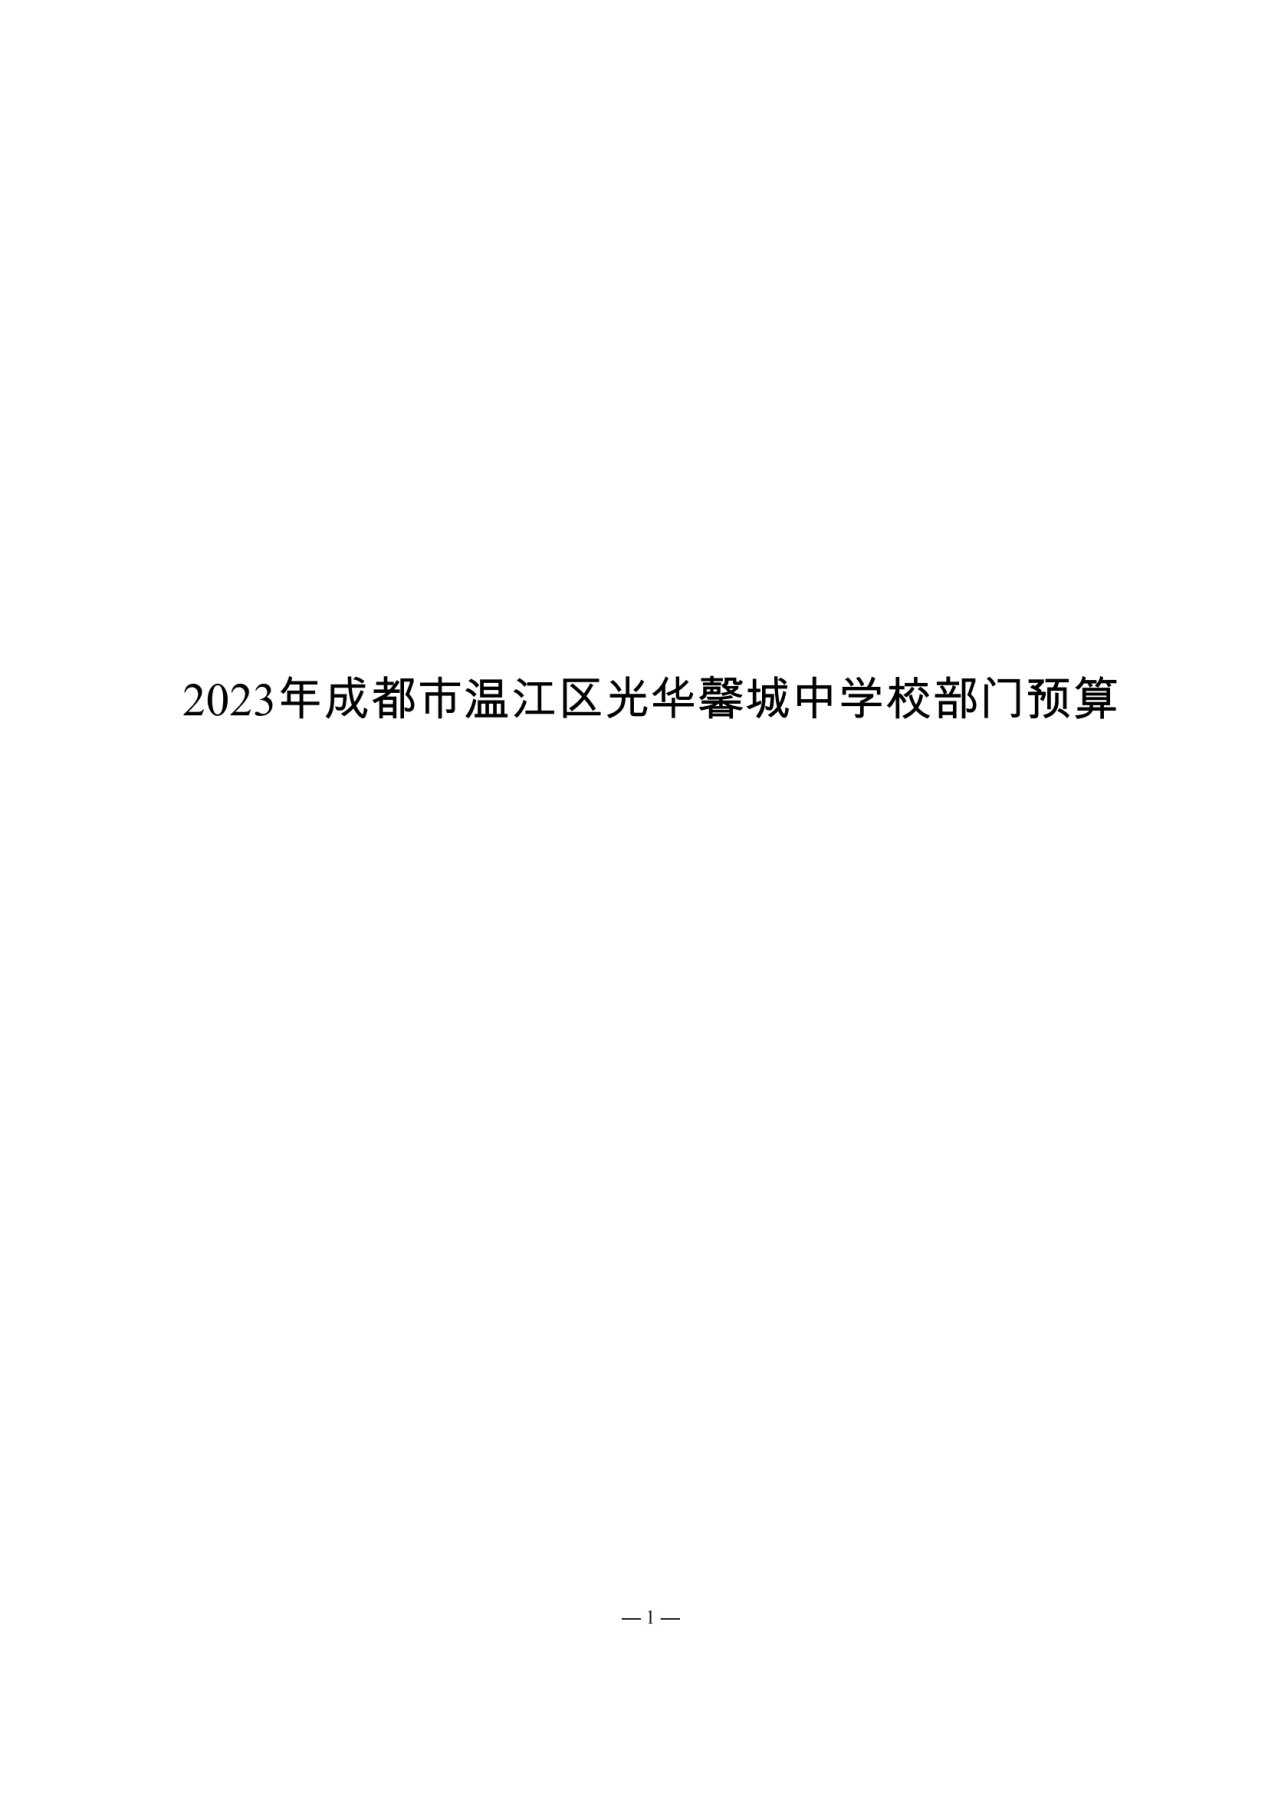 成都市温江区光华馨城中学校2023年预算公开_00